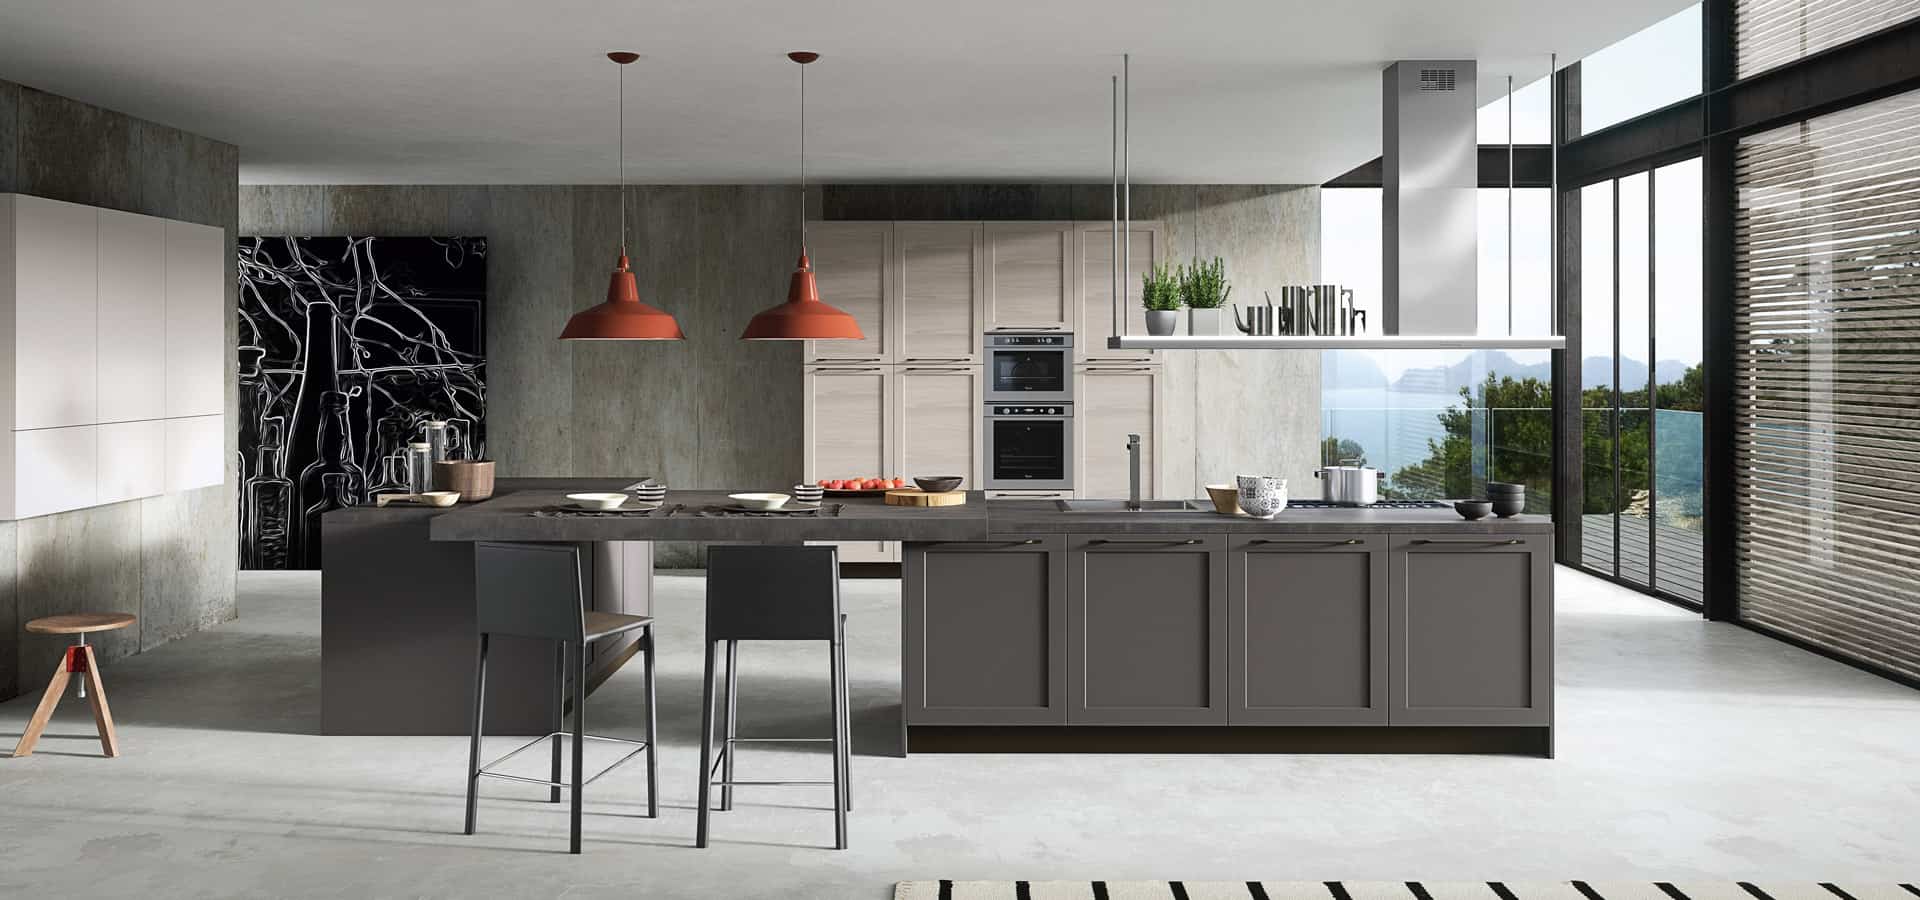 Modern Kitchen Design 18. 18 Amazing Ideas and Interior Styles